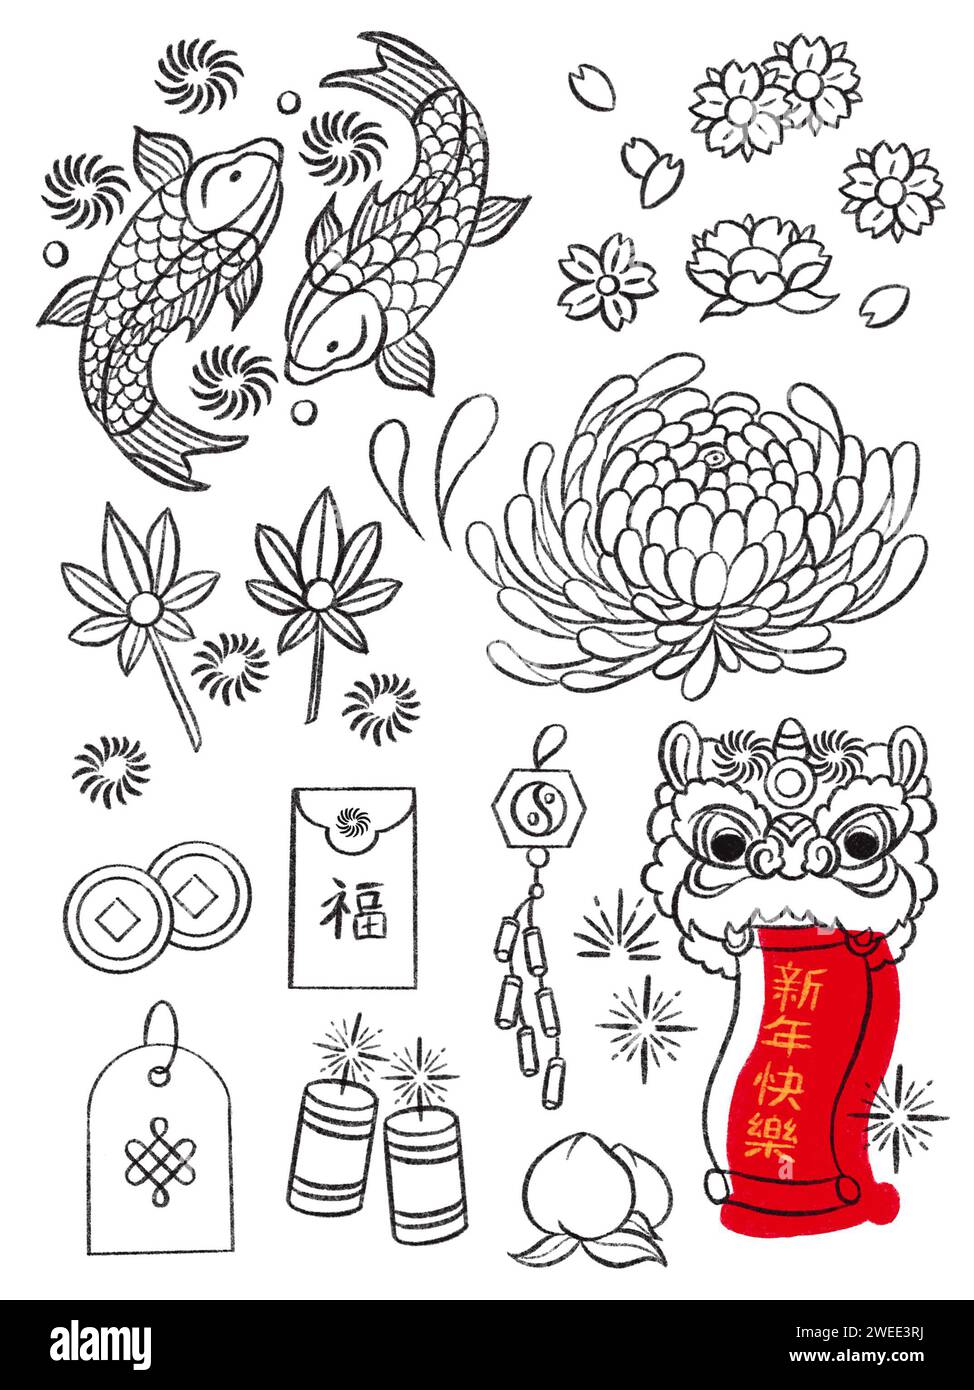 Chinesisches Neujahrsdekorationselement Linie Art Umrisszeichnung auf weißem Hintergrund, Fremdtextsetzung als frohes neues Jahr und reich Stockfoto